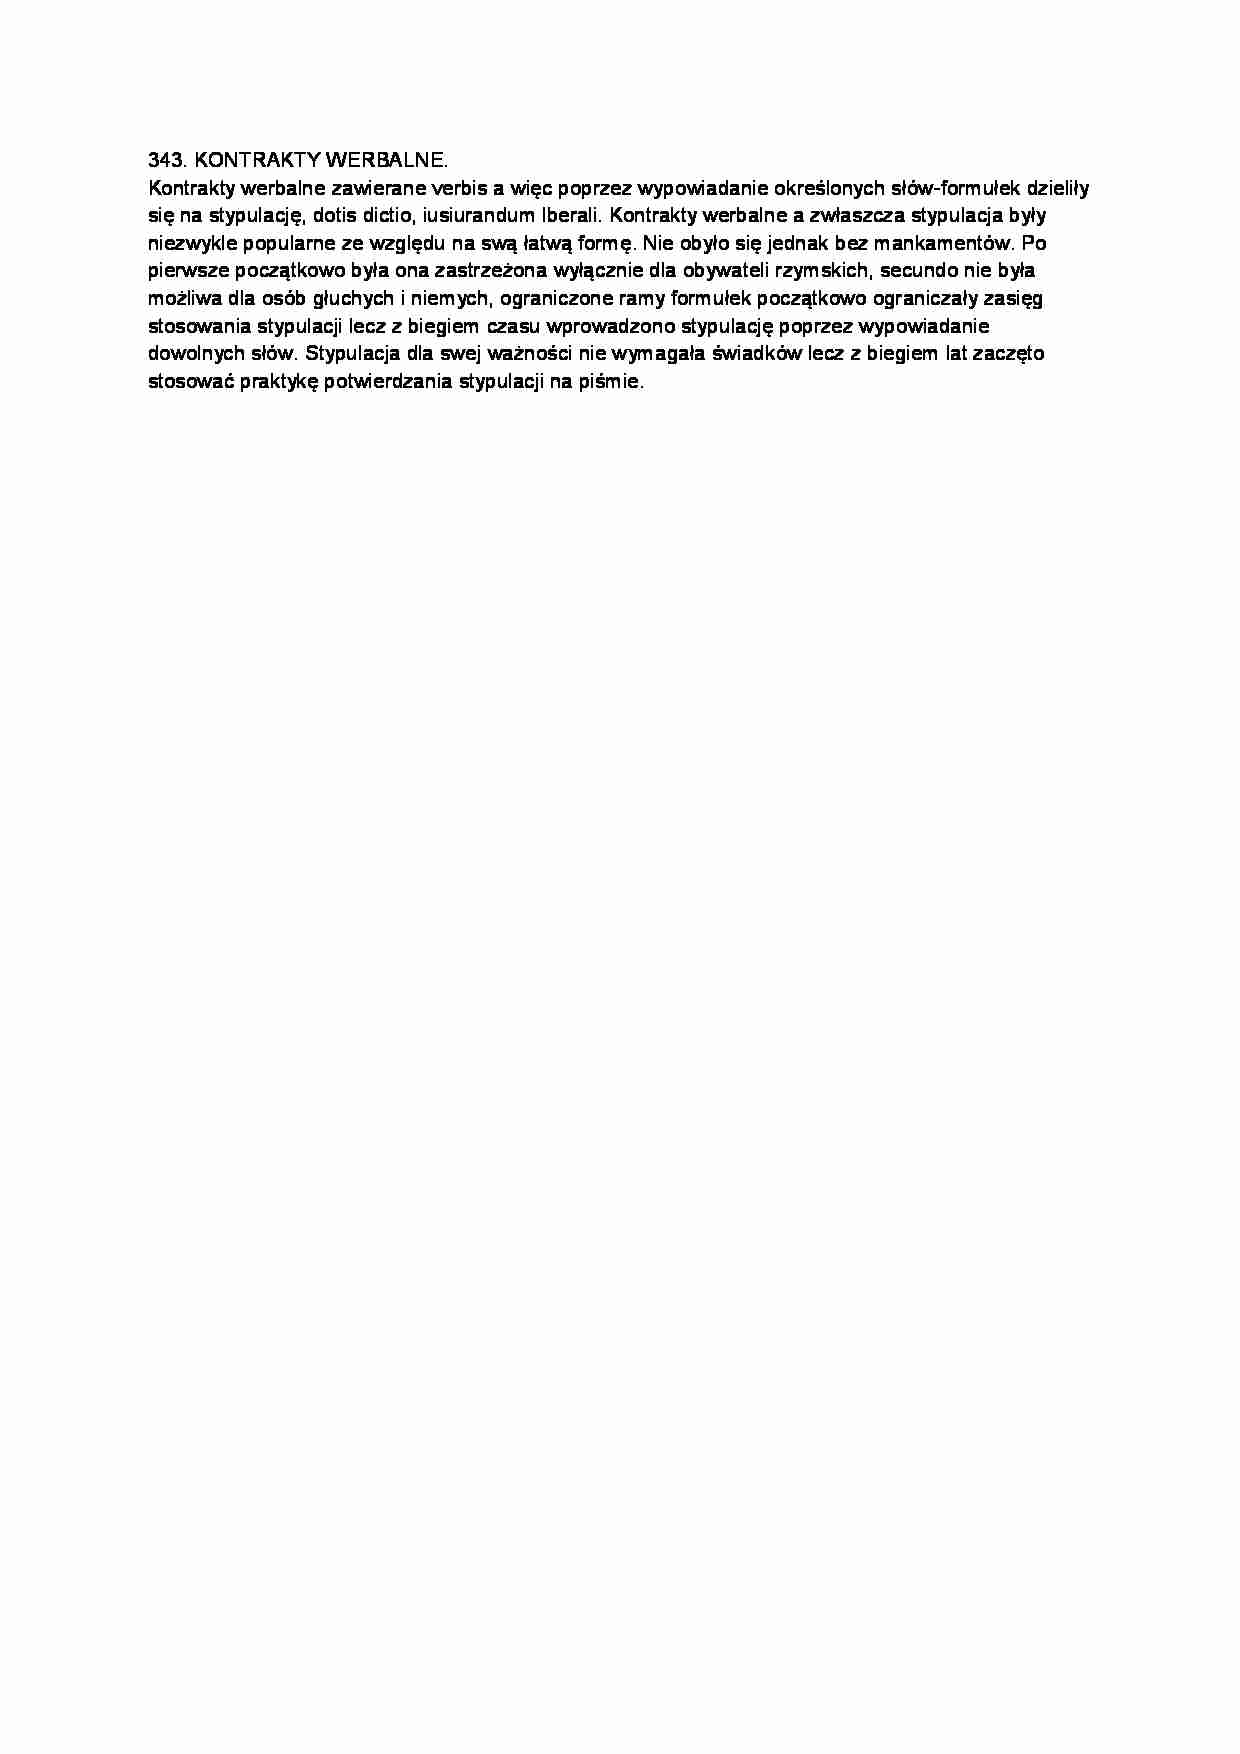 Kontrakty werbalne-opracowanie - strona 1